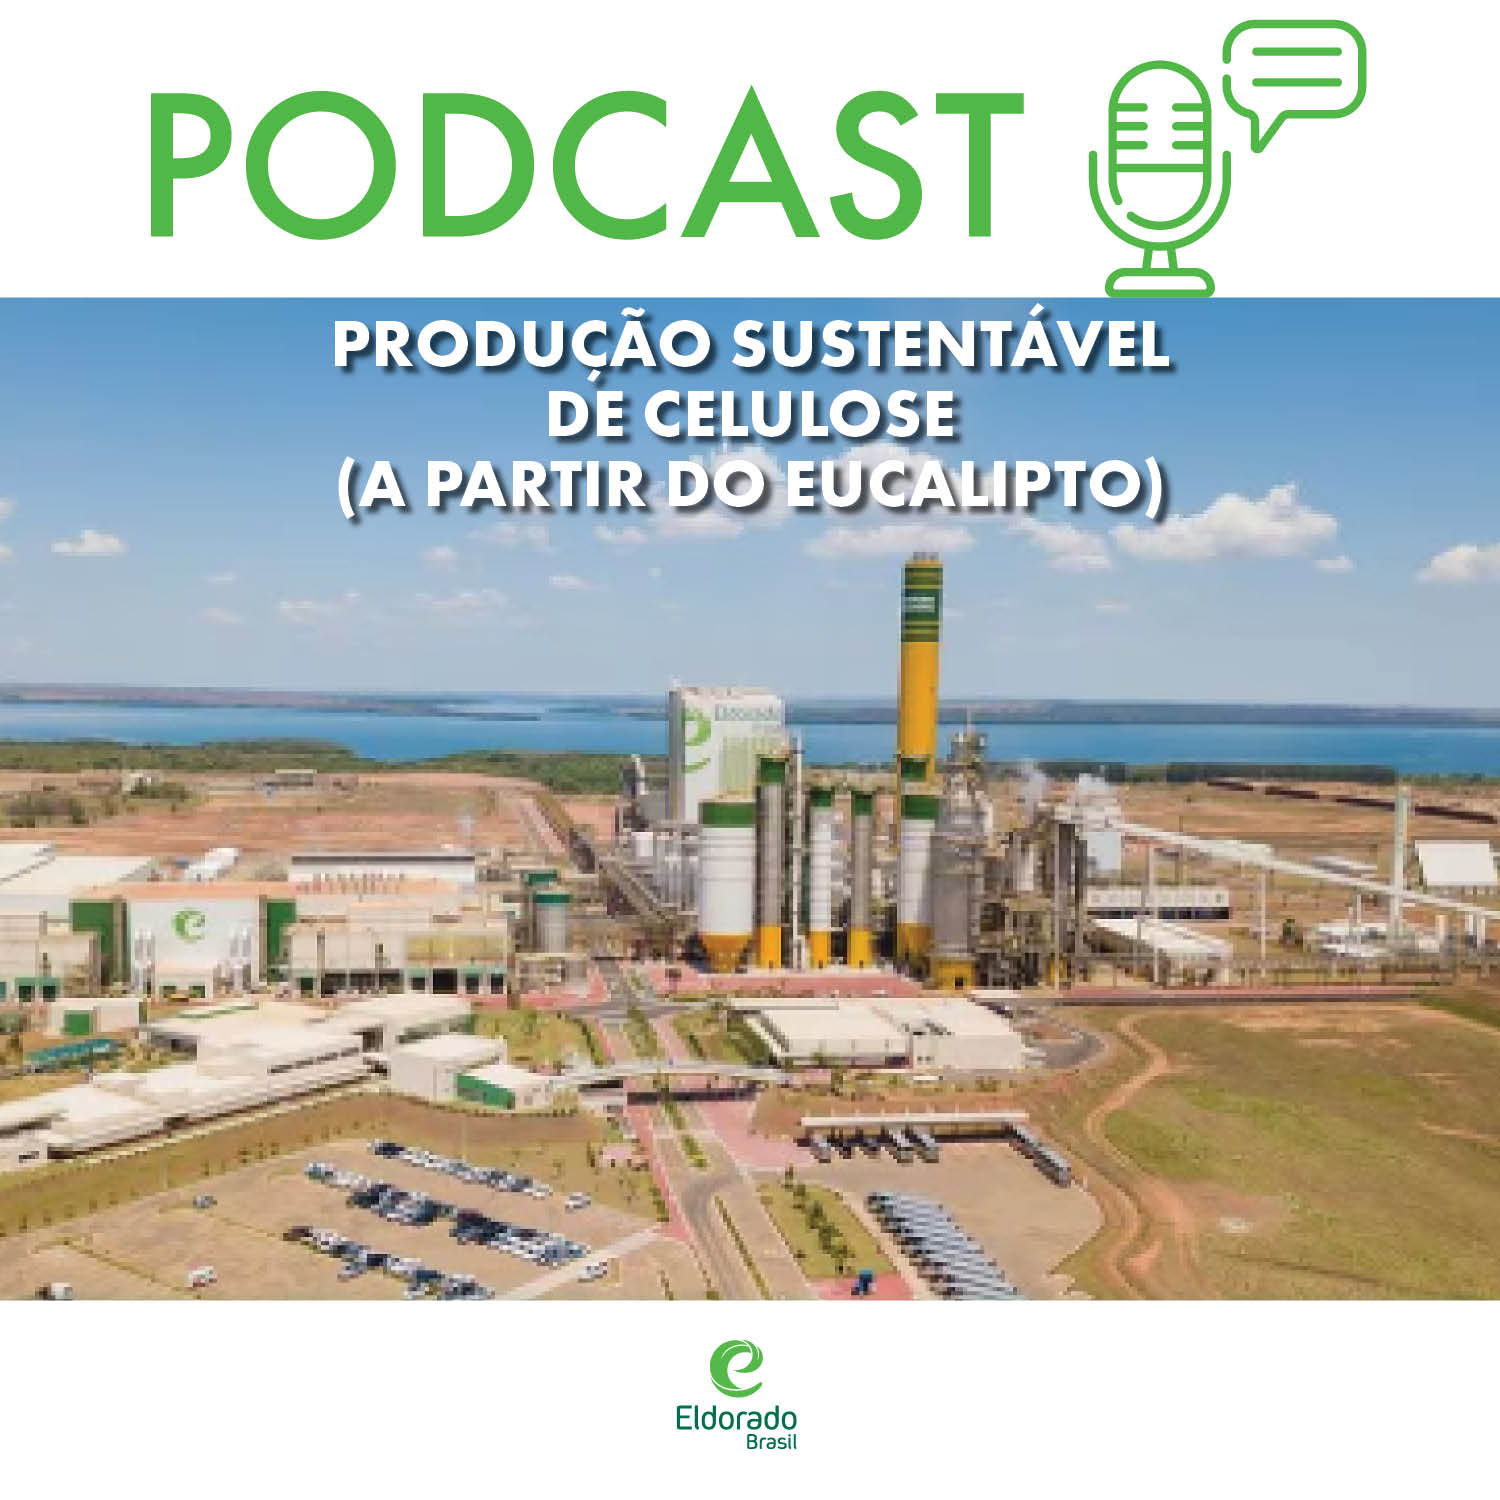 Conteúdo patrocinado: Eldorado Brasil investe na produção sustentável de celulose